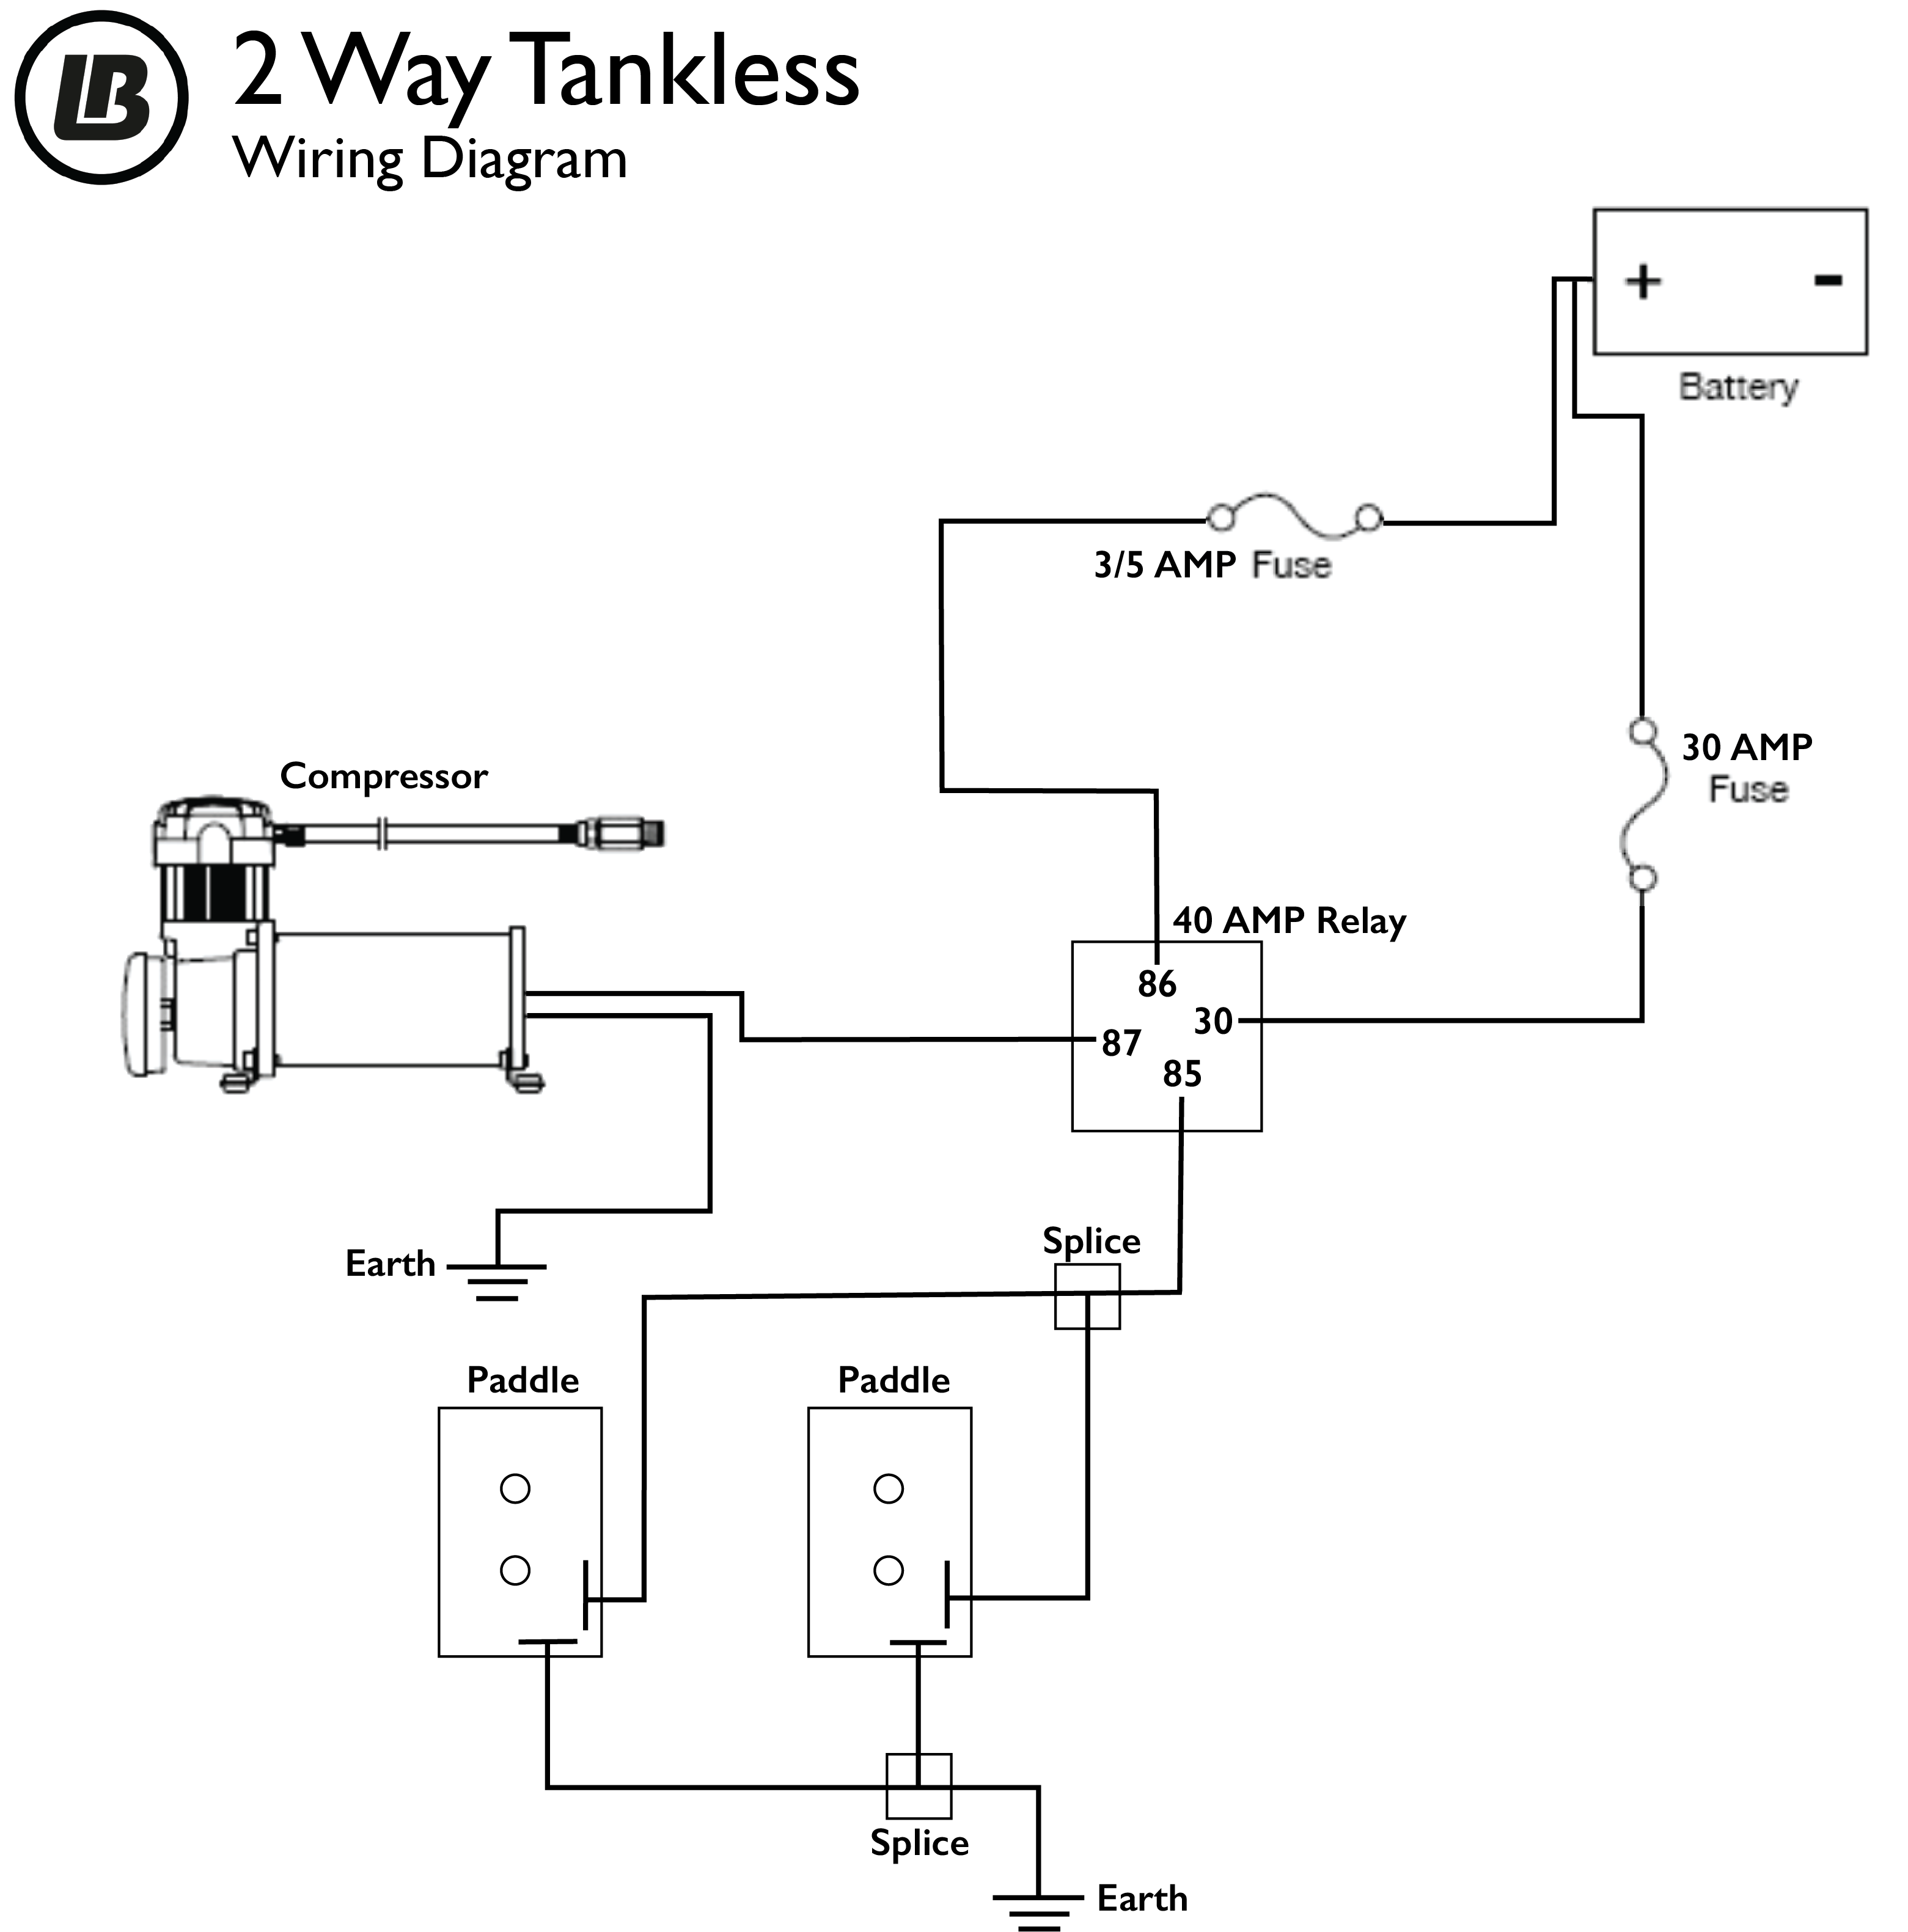 2 way tankless air ride manual wiring diagram